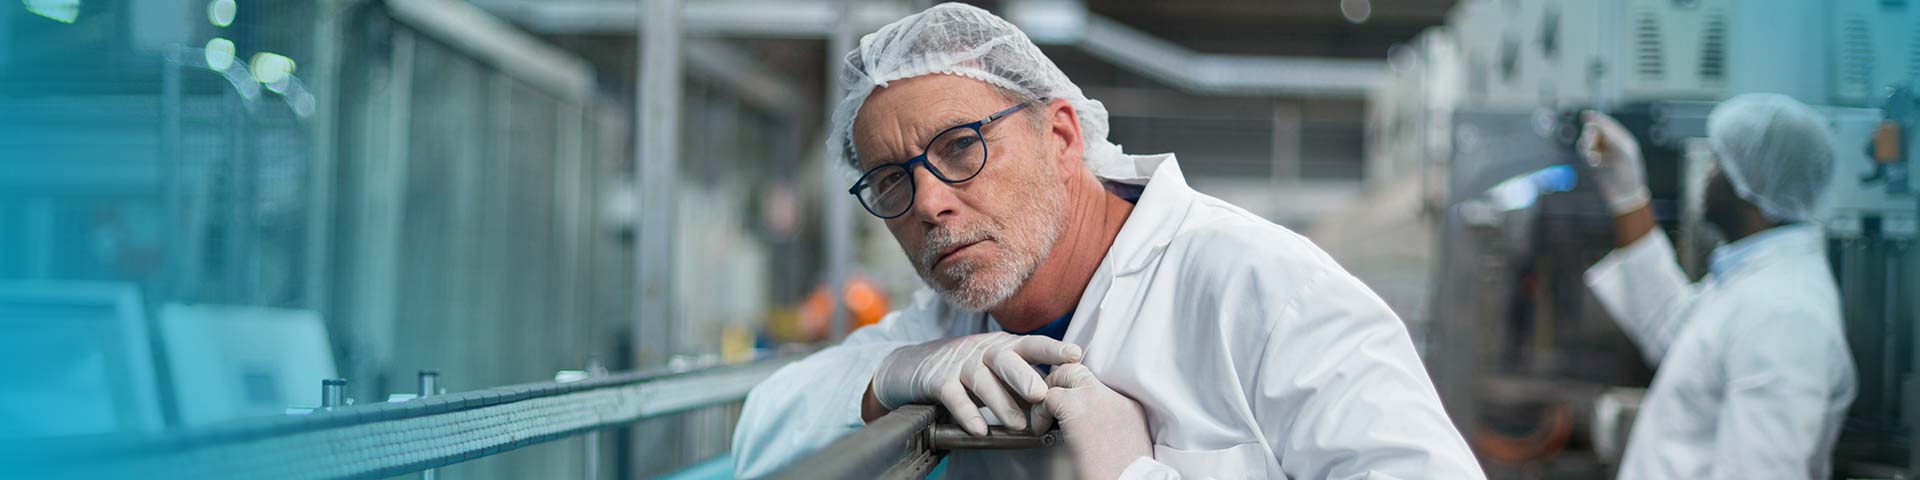 Ein Mann mit weißer Schutzkleidung, Haarnetz und Handschuhen wirft einen prüfenden Blick auf die Produktionsanlage.